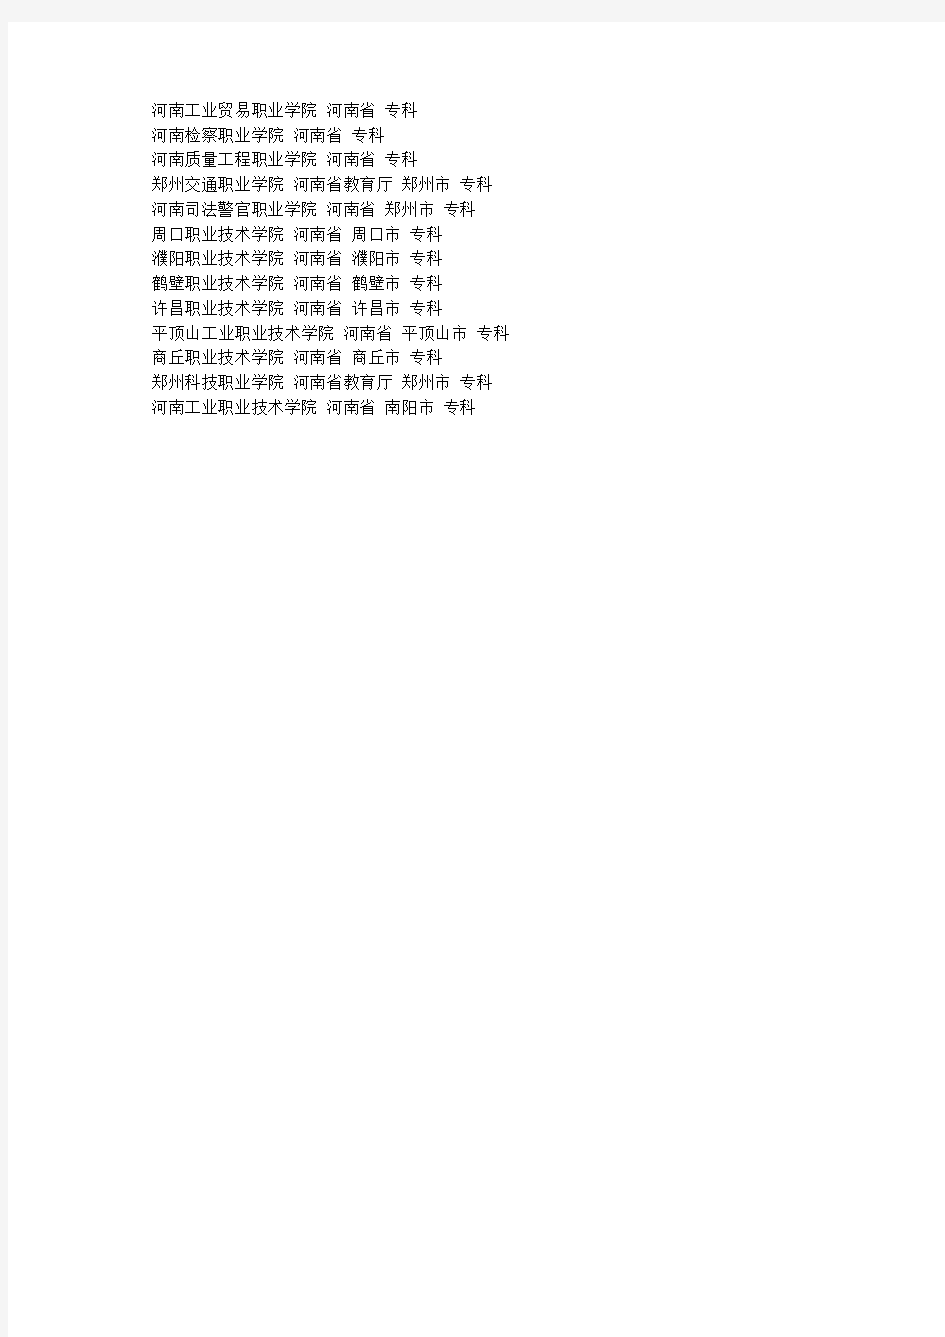 河南省专科学校排名如下